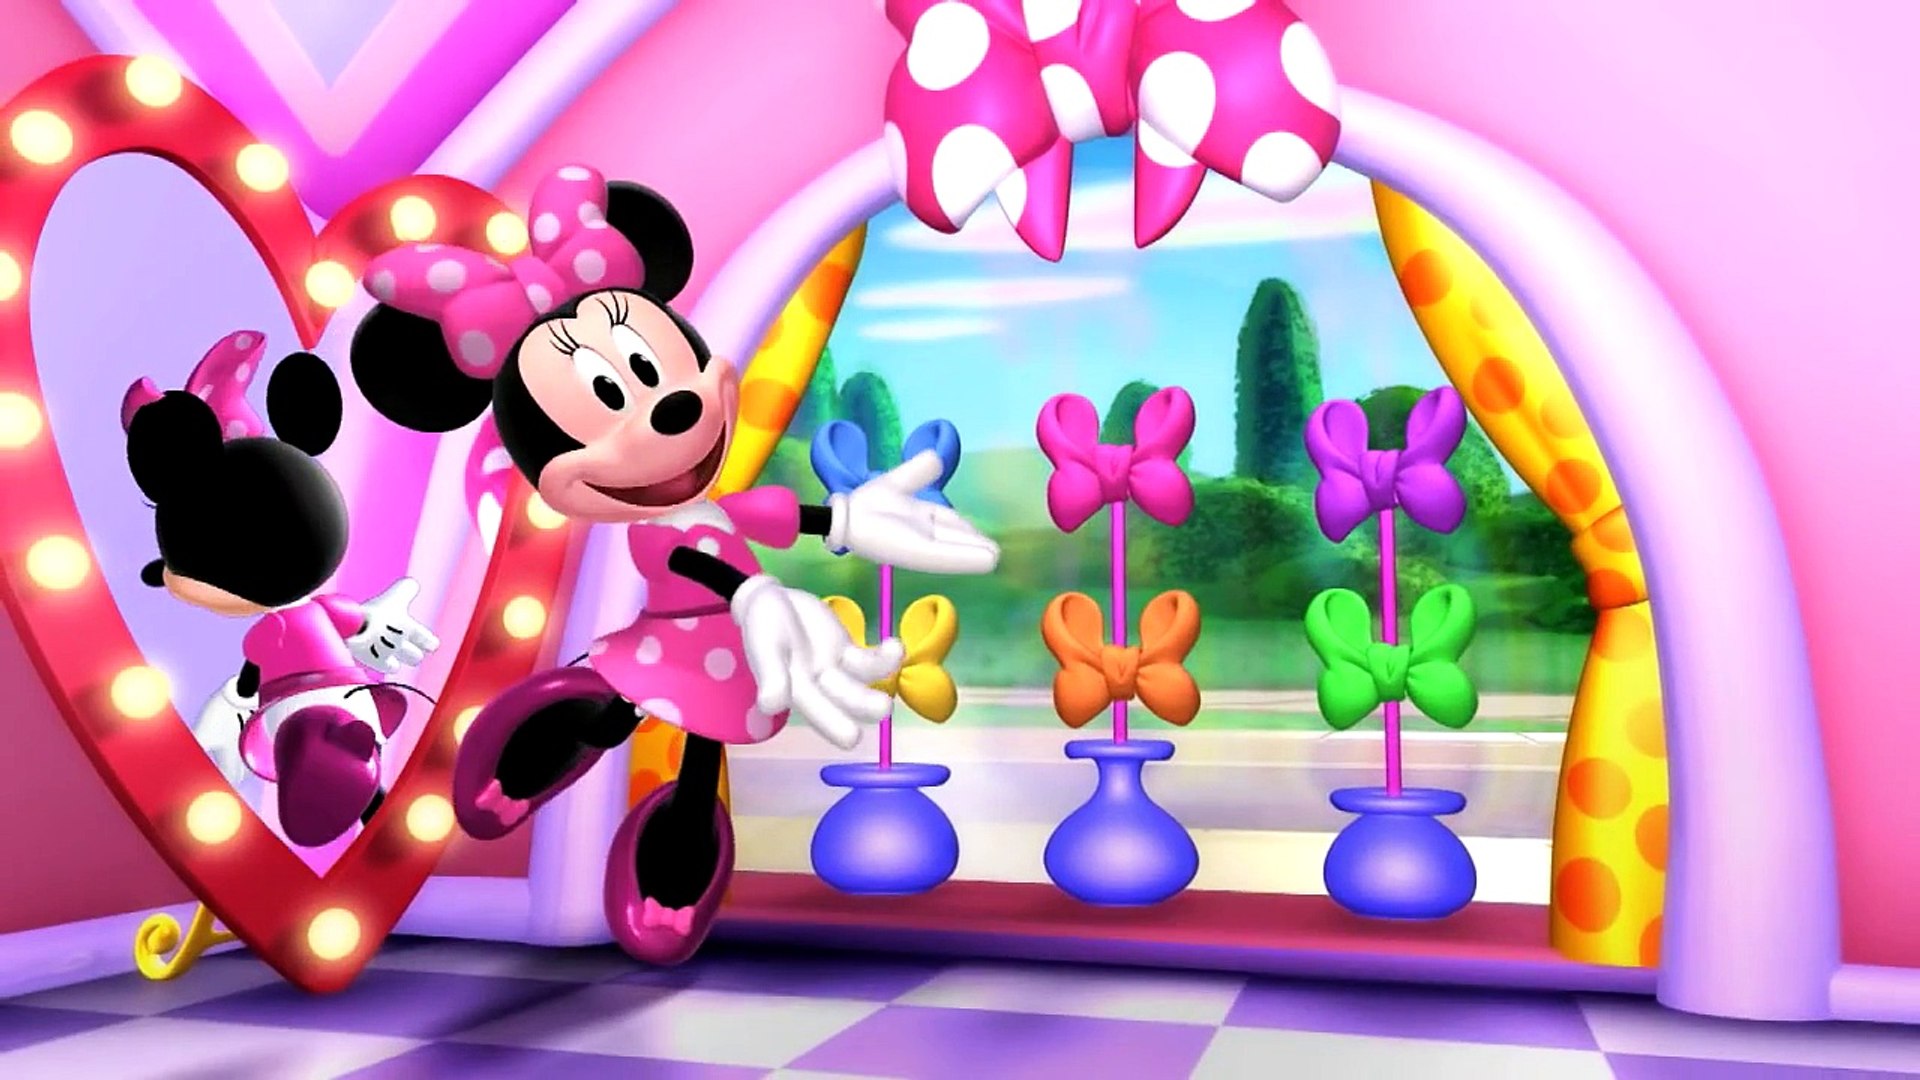 Disney Junior España | Los cuentos de Minnie: Una tienda en la oscuridad -  Dailymotion Video